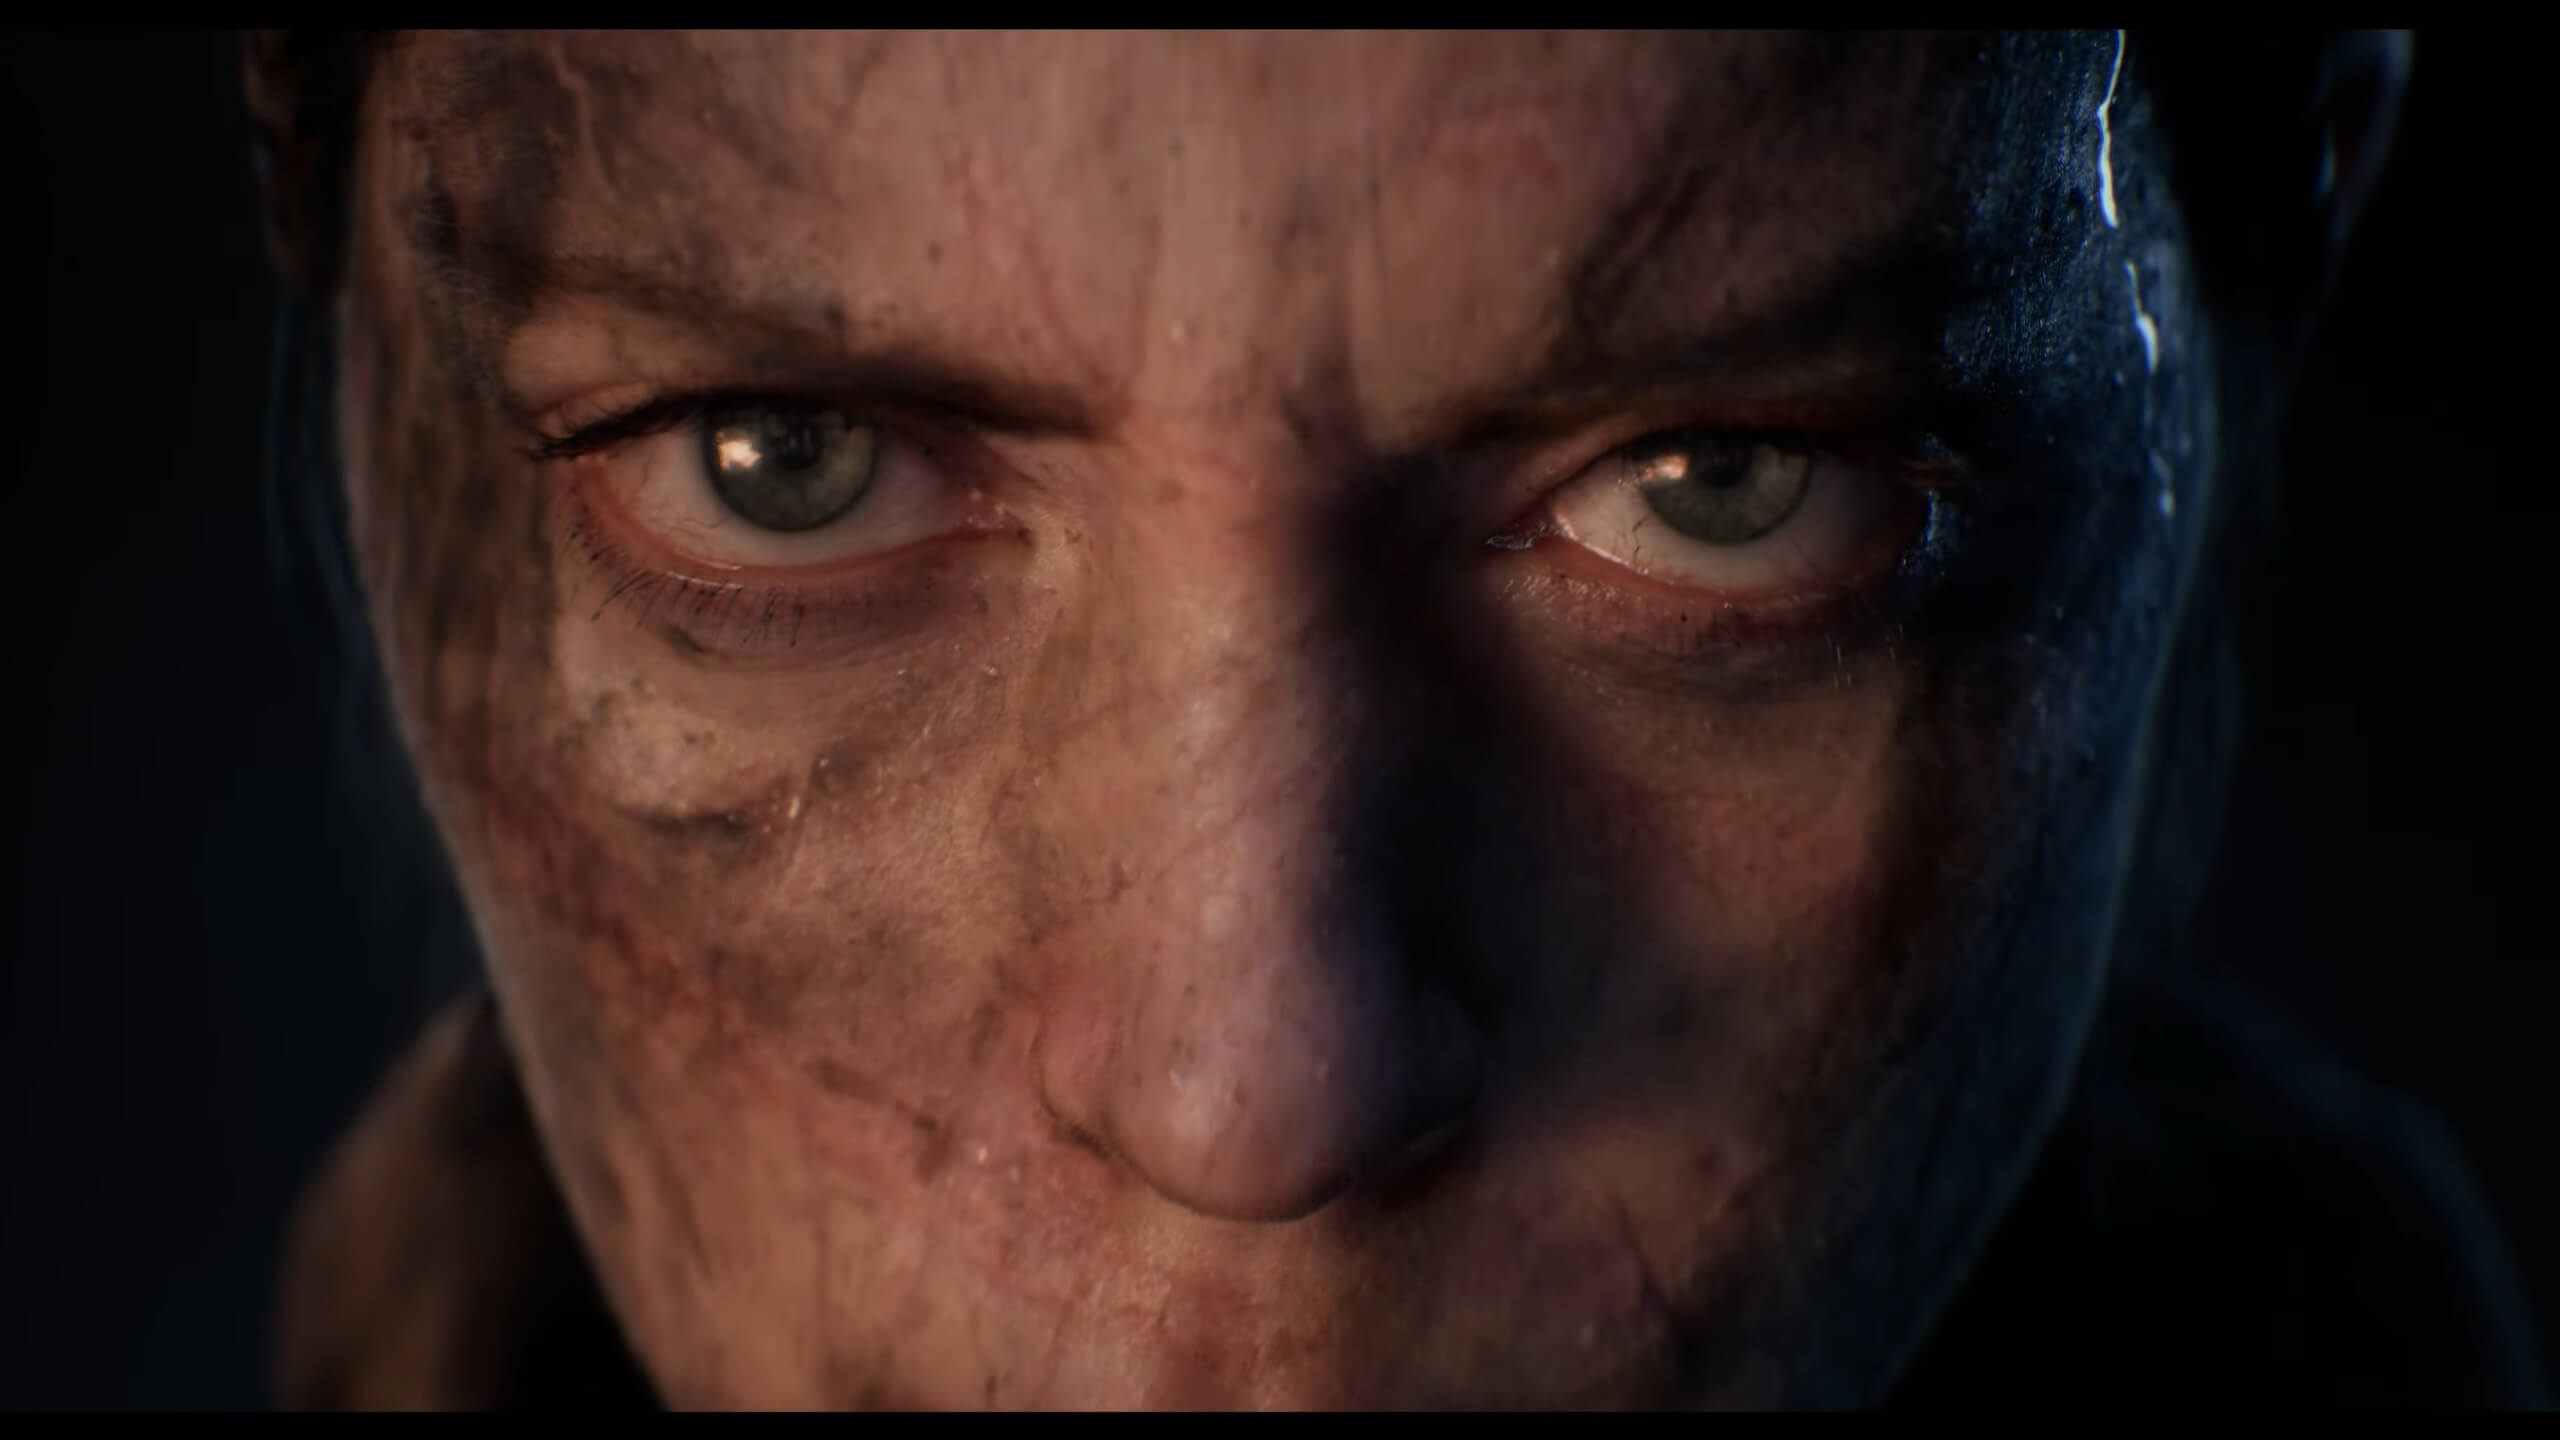 HELLBLADE 2 'Senua' Trailer (2024) Unreal Engine 5.2